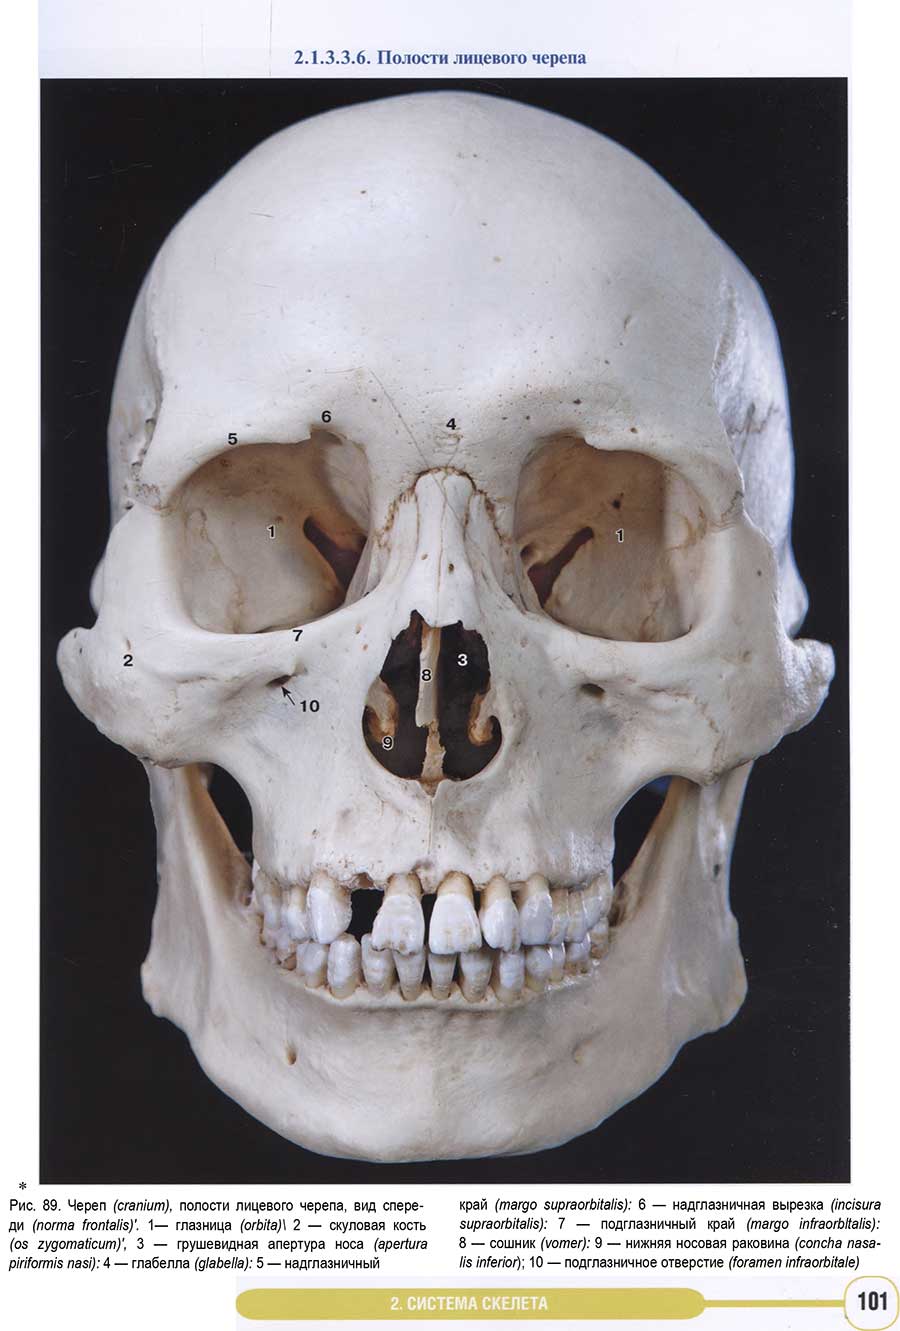 Примеры страниц из книги "Анатомия человека. Фотографический атлас. Том 1. Опорно-двигательный аппарат"